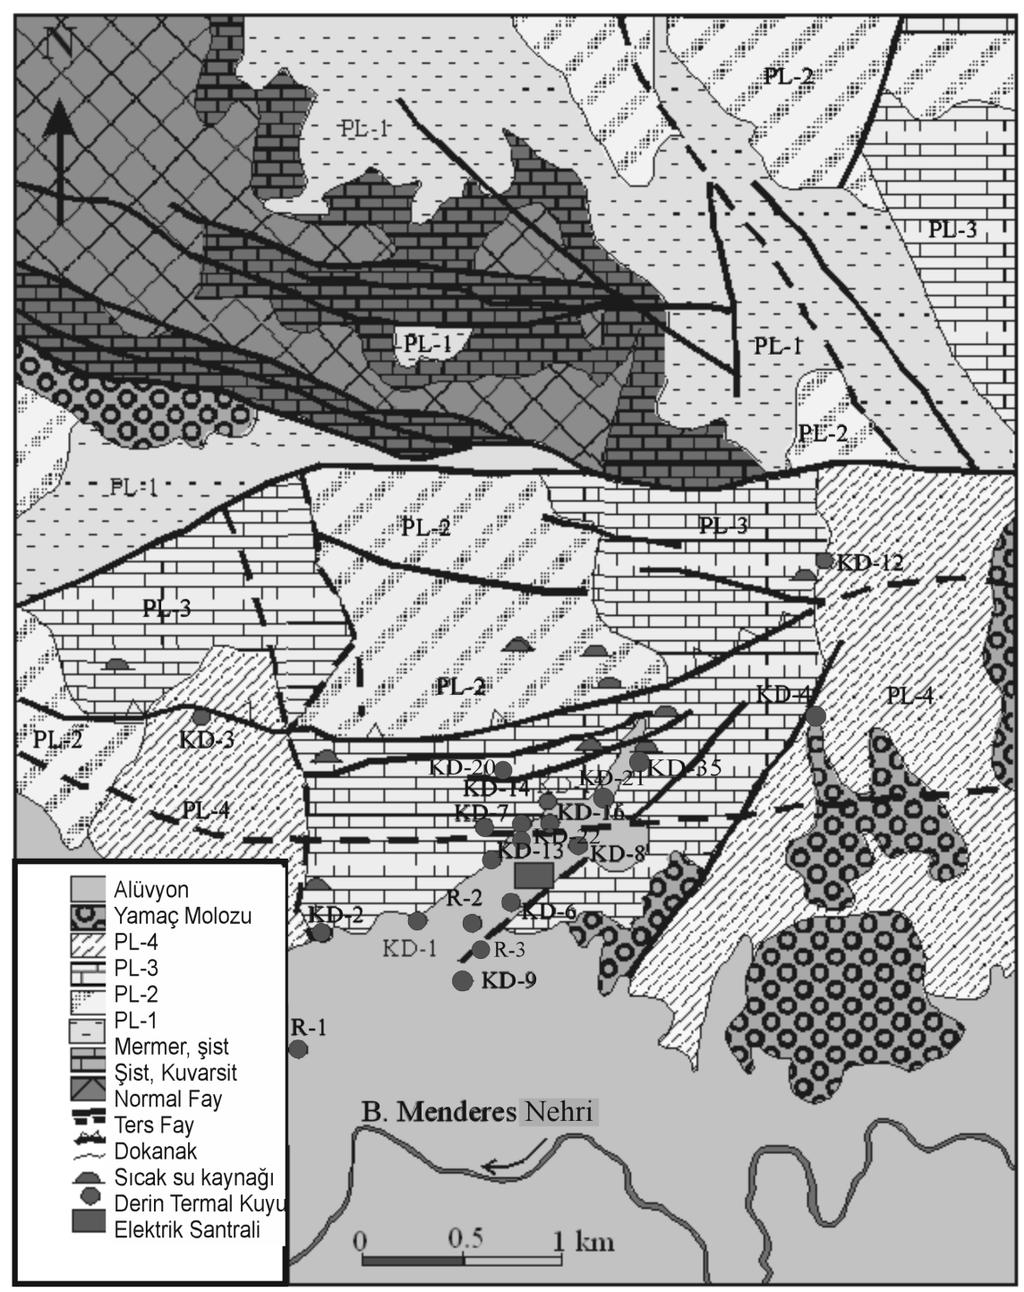 Şekil 2. Kızıldere jeotermal alanı çevresinin jeoloji haritası ve su noktalarının yeri (Şimşek, 1985 ve Şimşek vd., 2005 den düzenlenerek). 3.